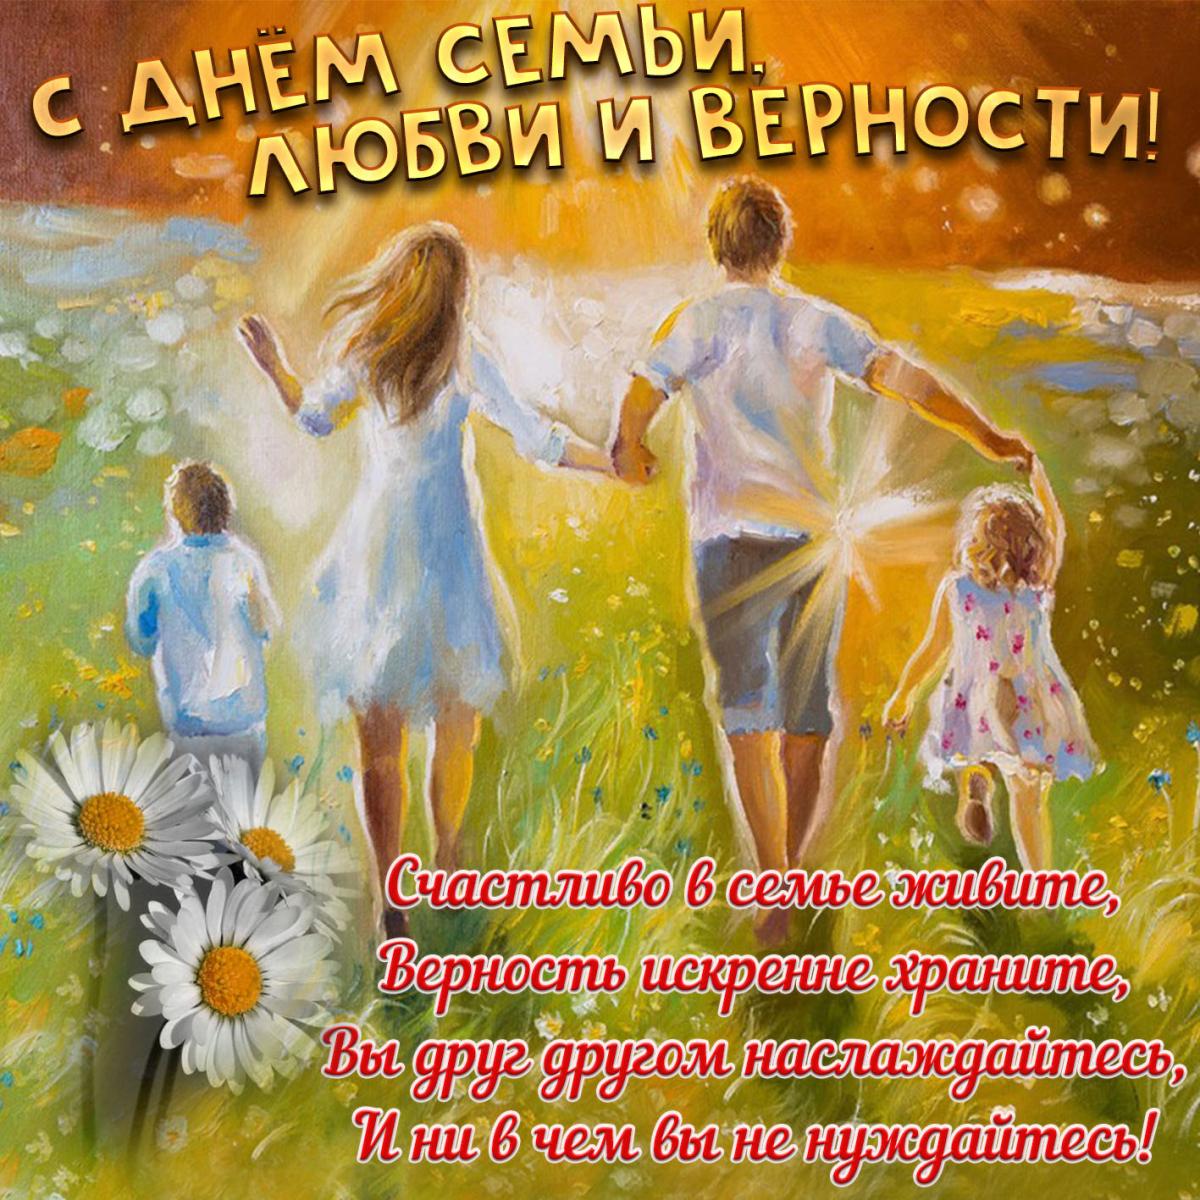 Как поздравить с днем семьи любви и верности / bonnycards.ru